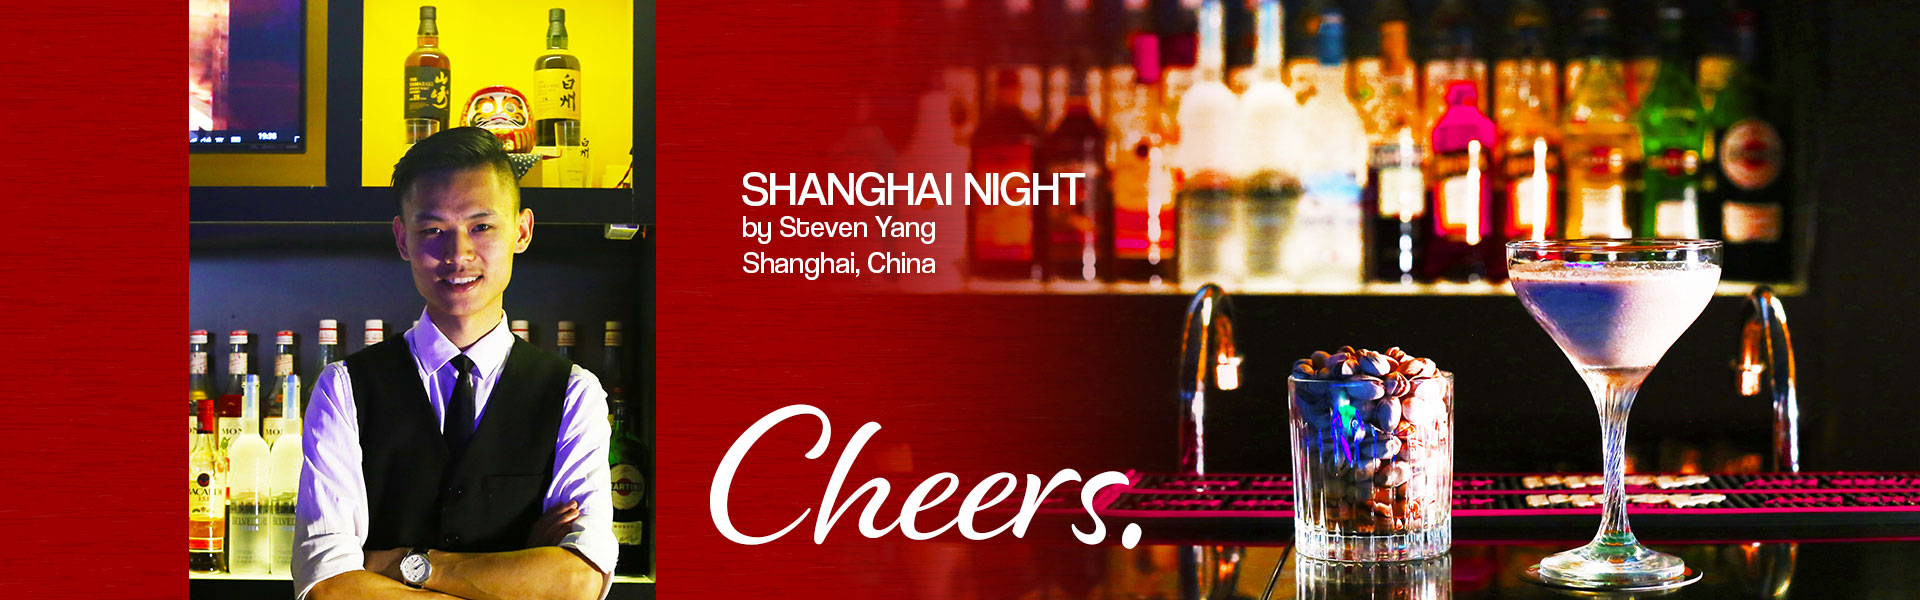 Shanghai Night - Cheers